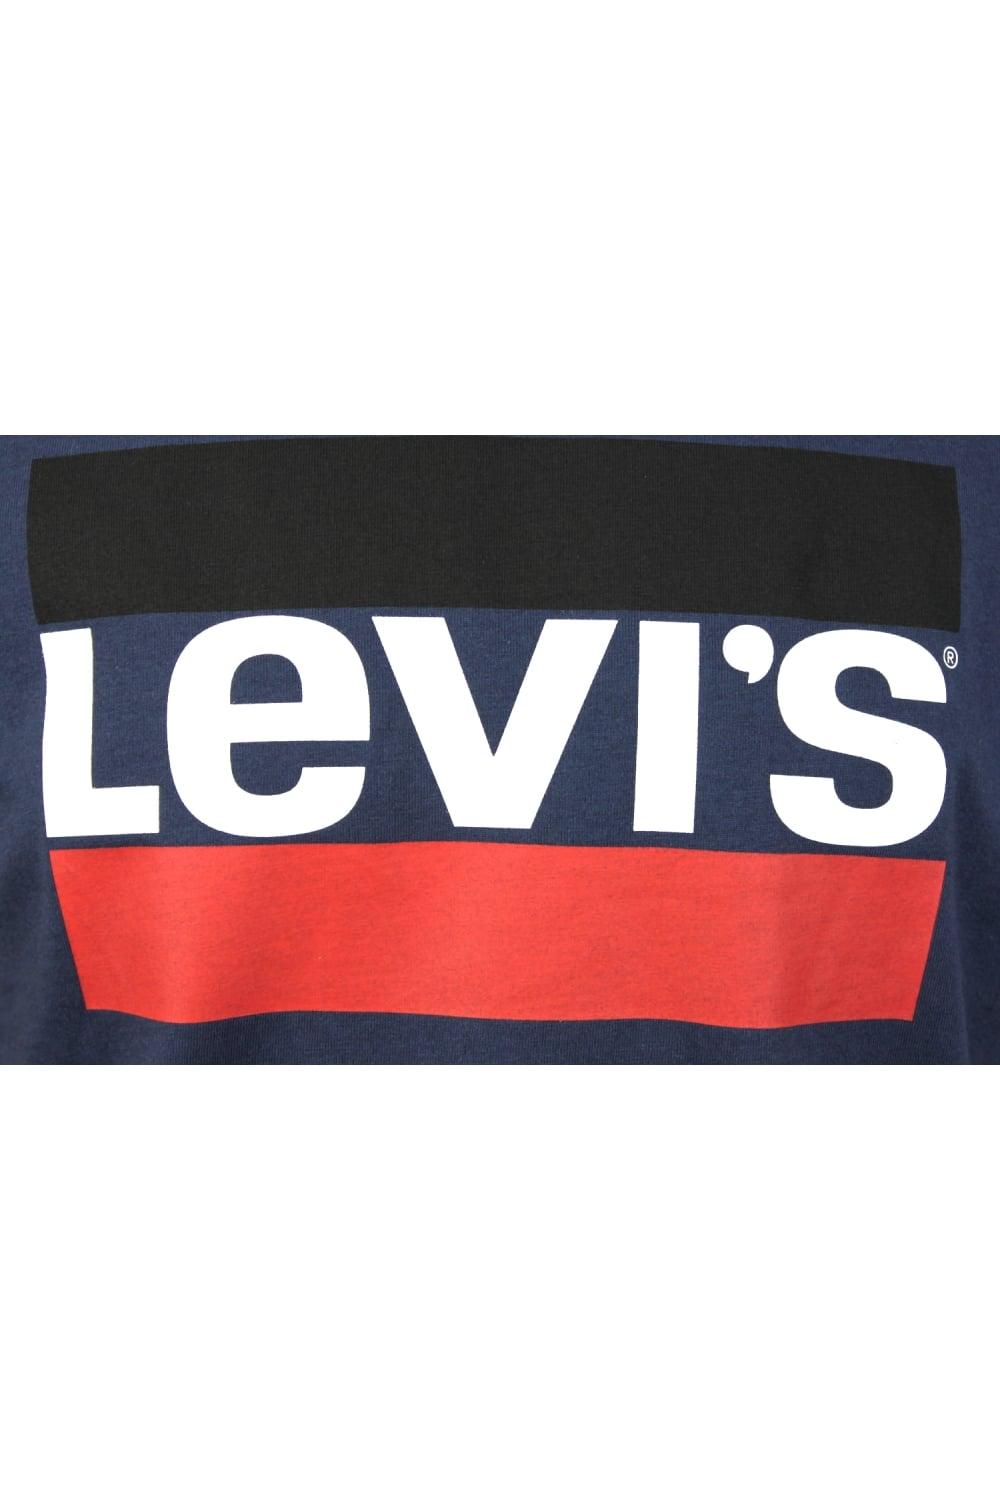 Sportswear Logo - Levi's Sportswear Logo Short Sleeved T Shirt (Navy)